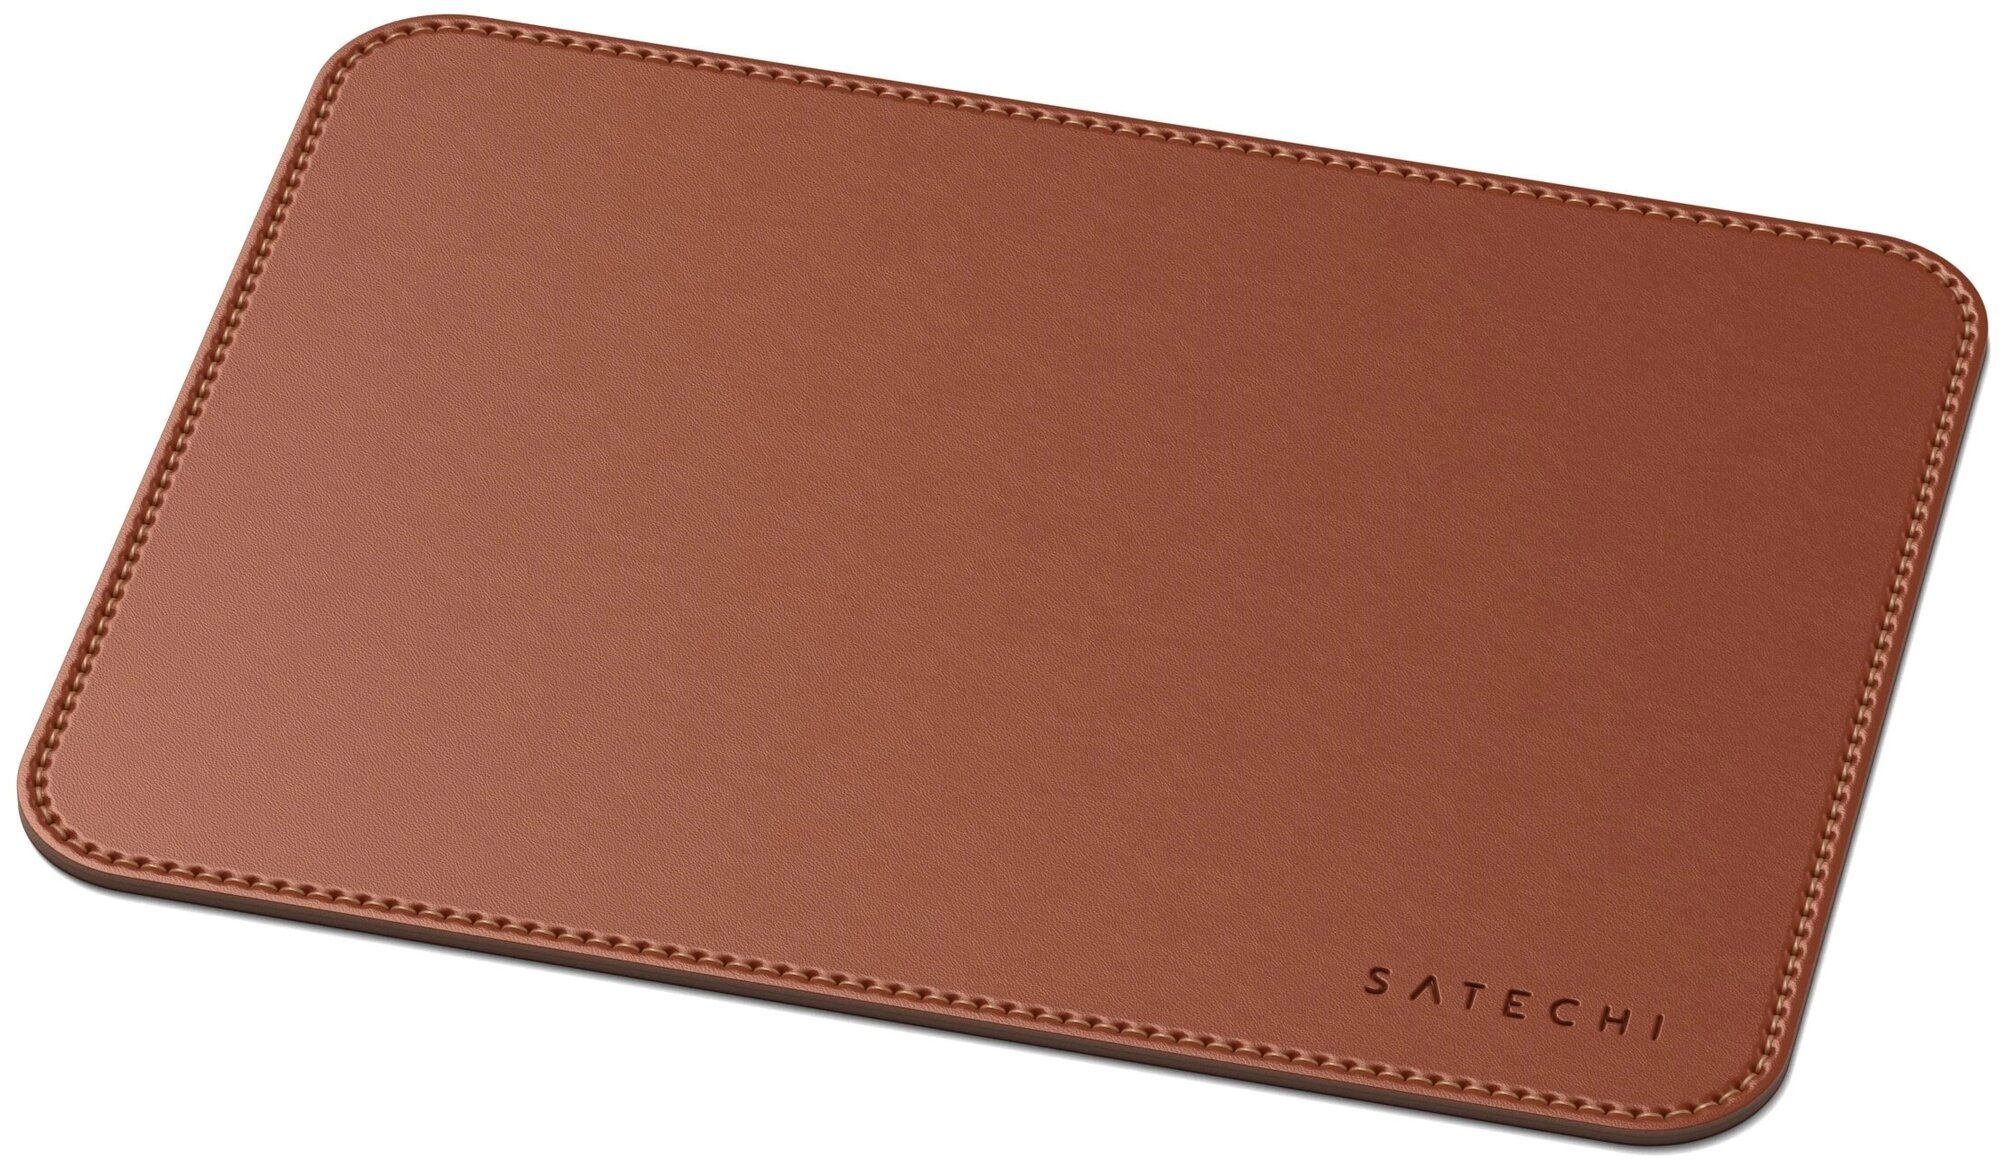 Коврик Satechi Eco Leather Mouse Pad Размер 25 x 19 см. коричневый. коврик игровой pulsar es1 mouse pad 3mm l 420x330 black